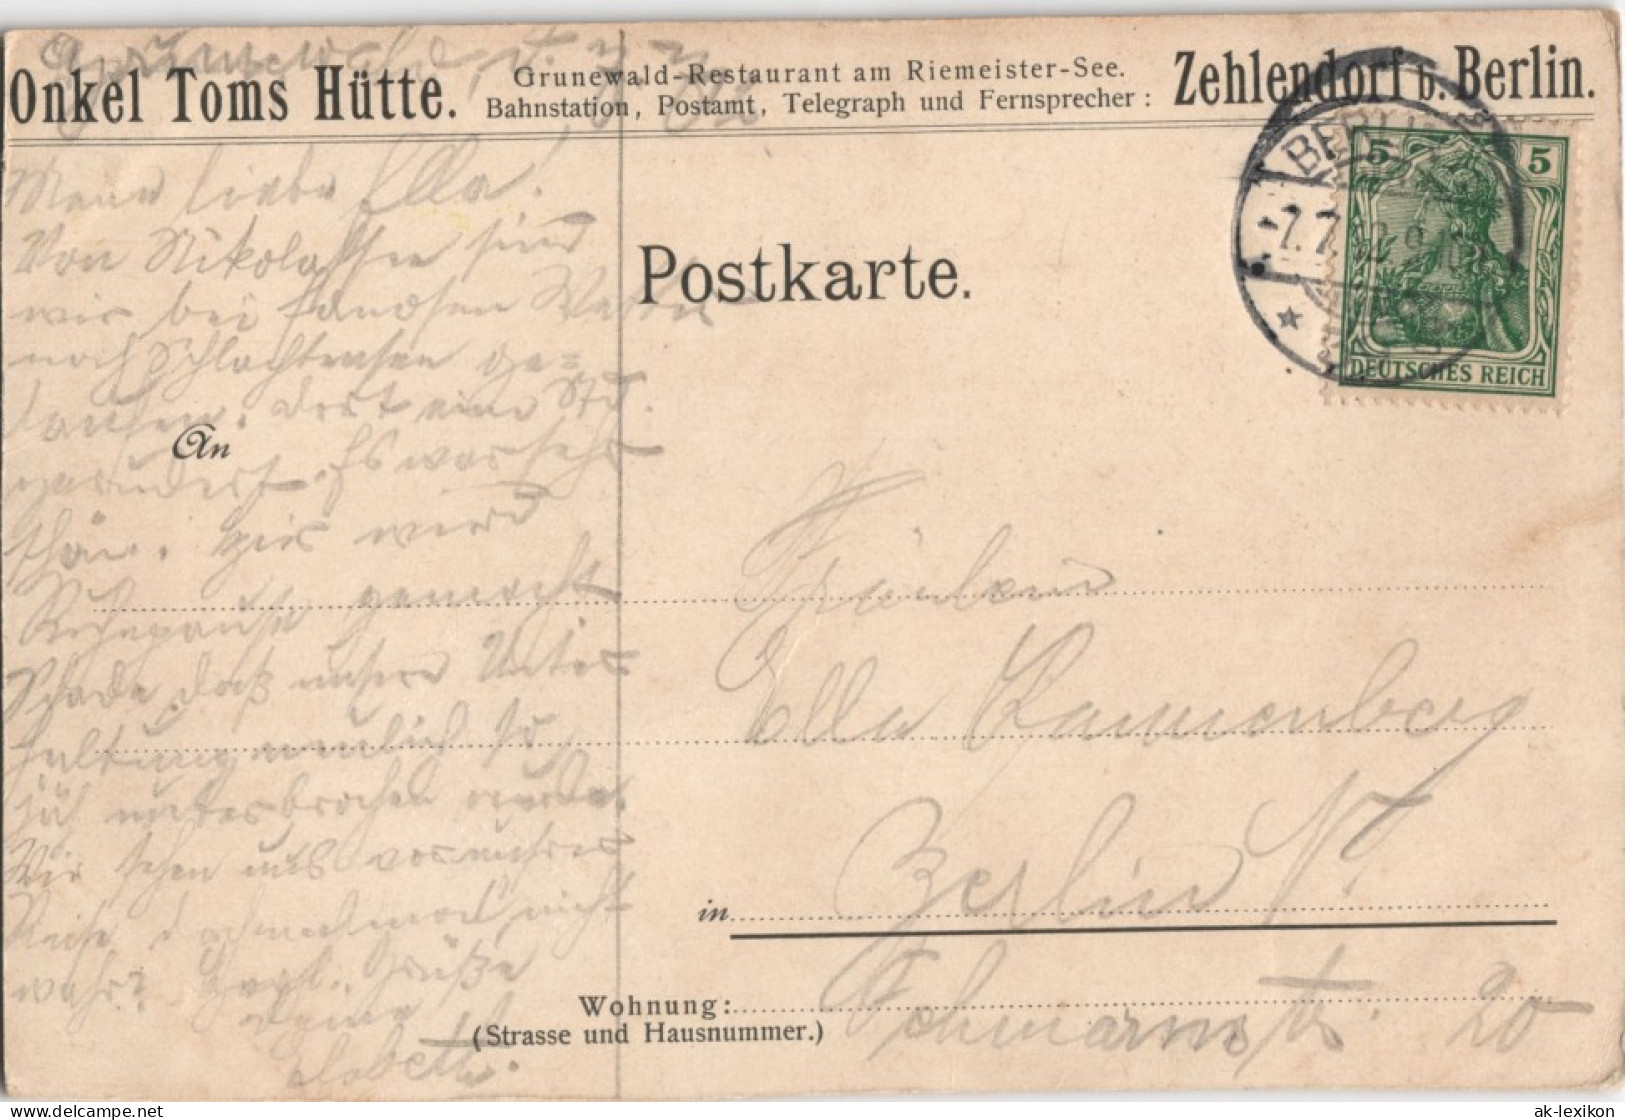 Ansichtskarte Grunewald-Berlin Gruss Aus Onkel Toms Hütte 1902 - Grunewald